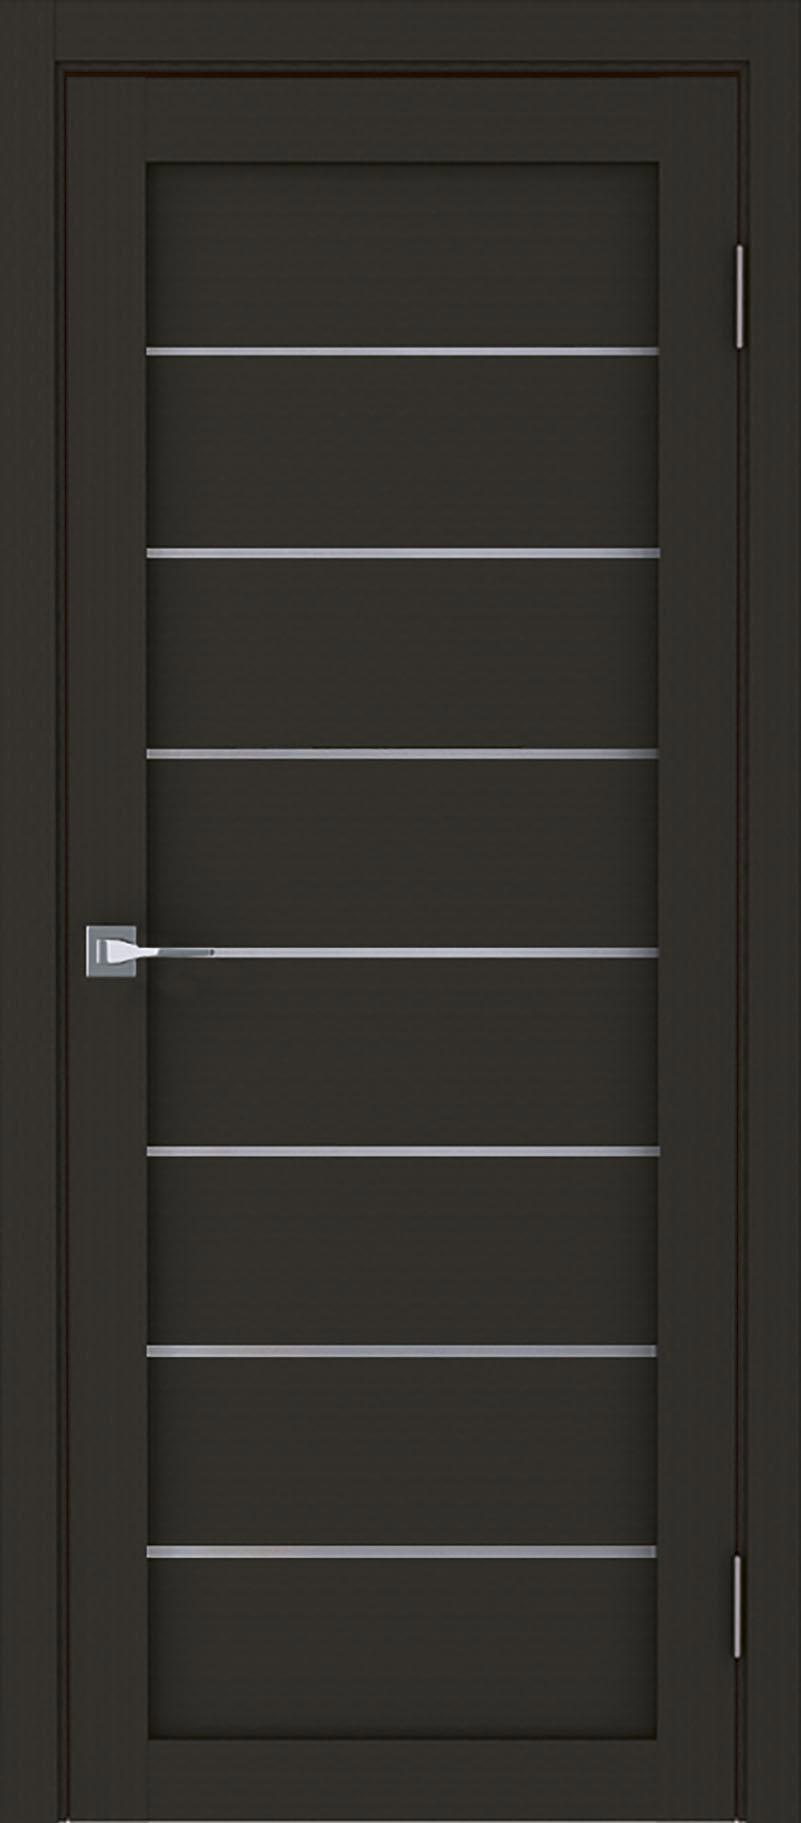 90903186 Межкомнатная дверь Модерн 10005 остеклённая без замка и петель в комплекте 200x80см каштан STLM-0420012 UBERTURE